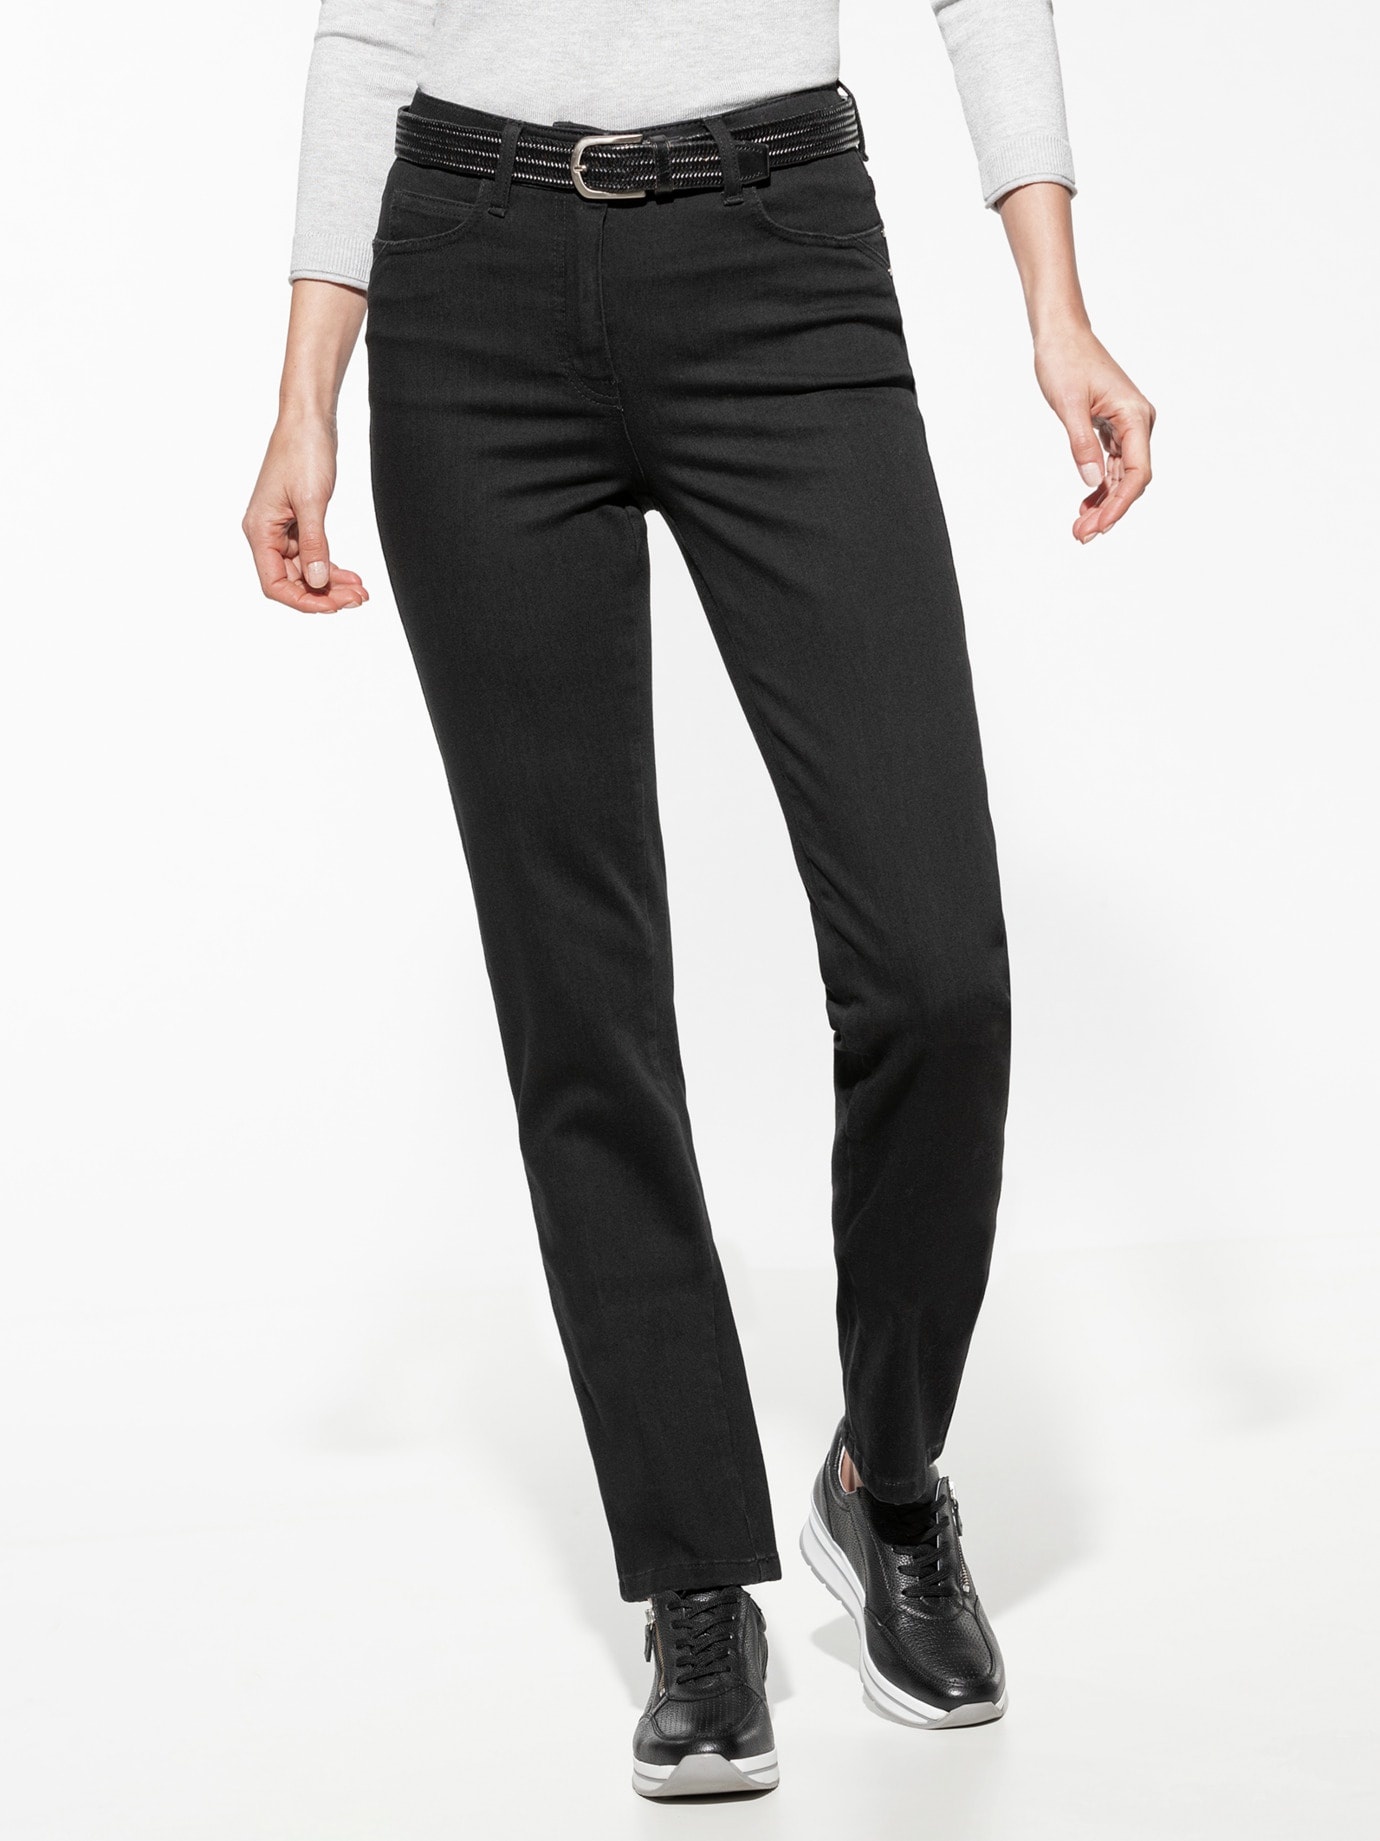 Walbusch Damen Jeans Bestform einfarbig Black 80